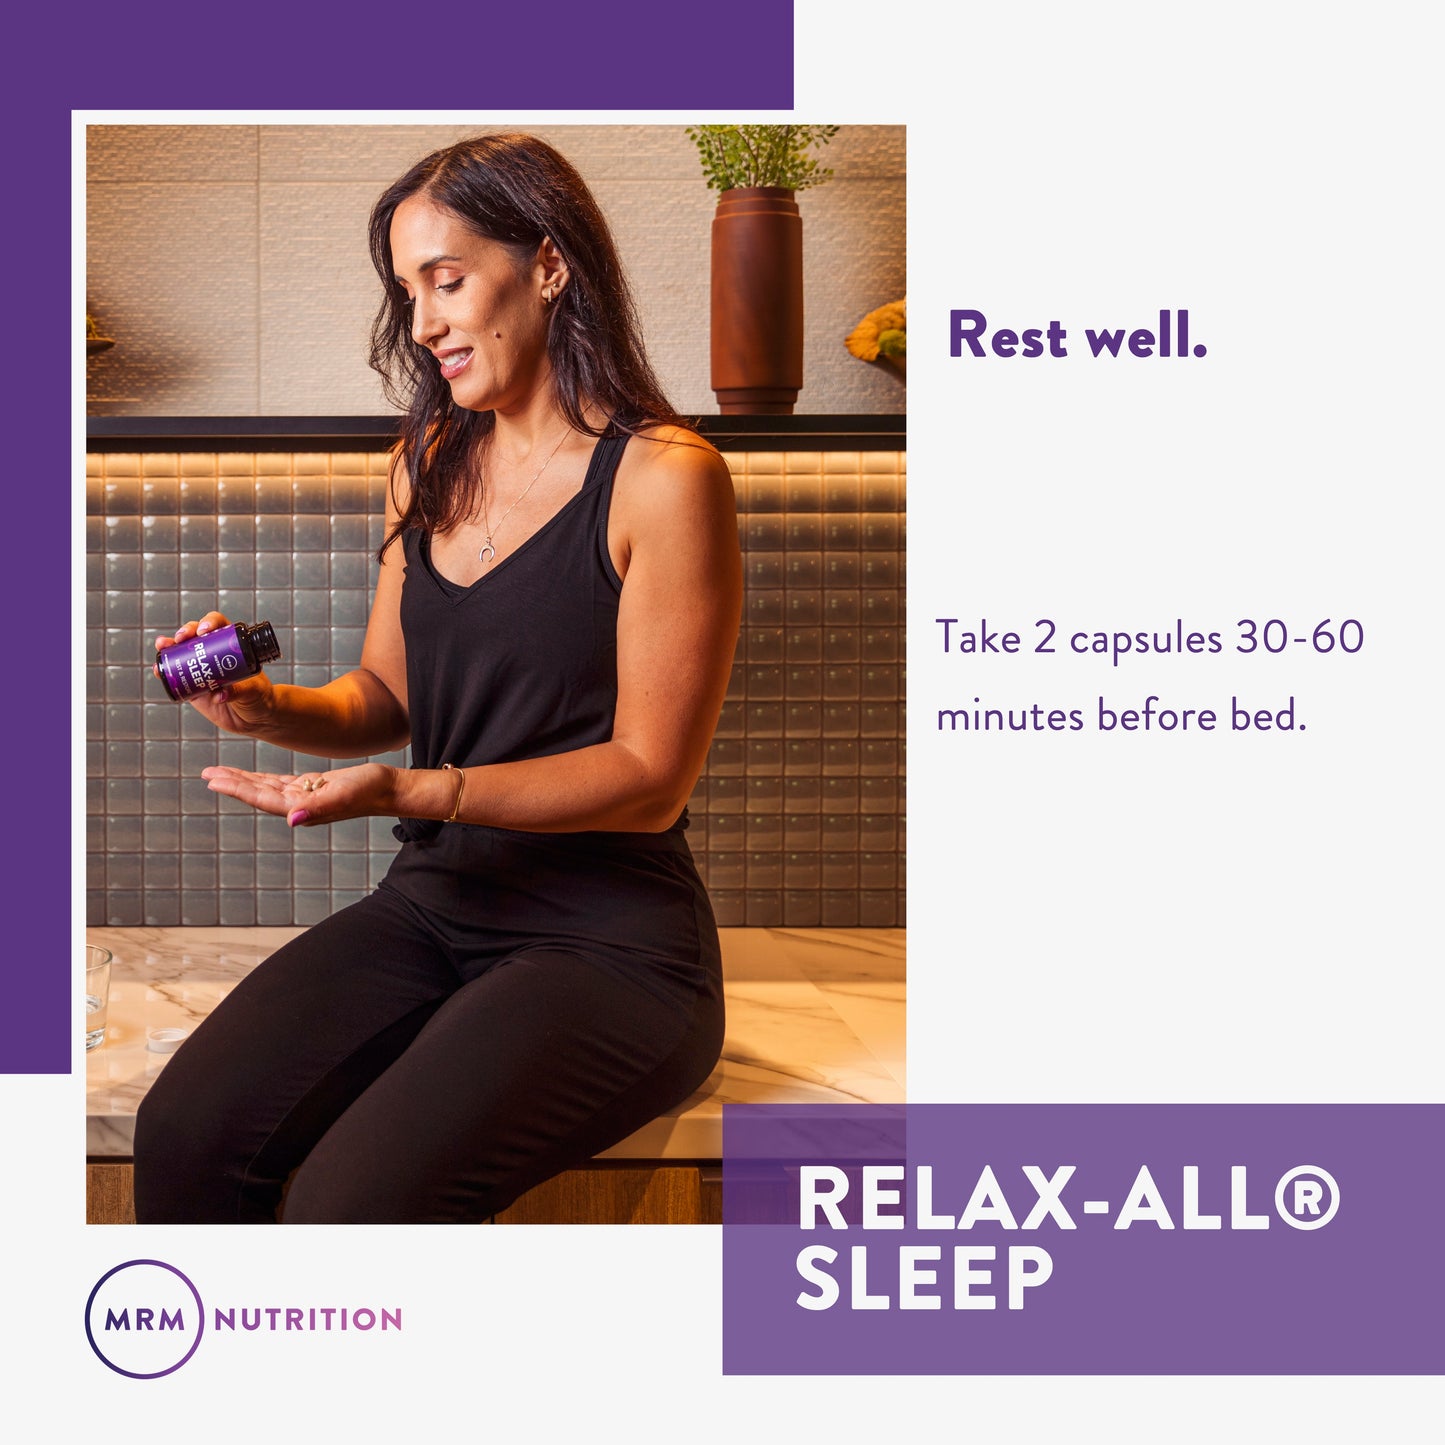 Relax-All SLEEP